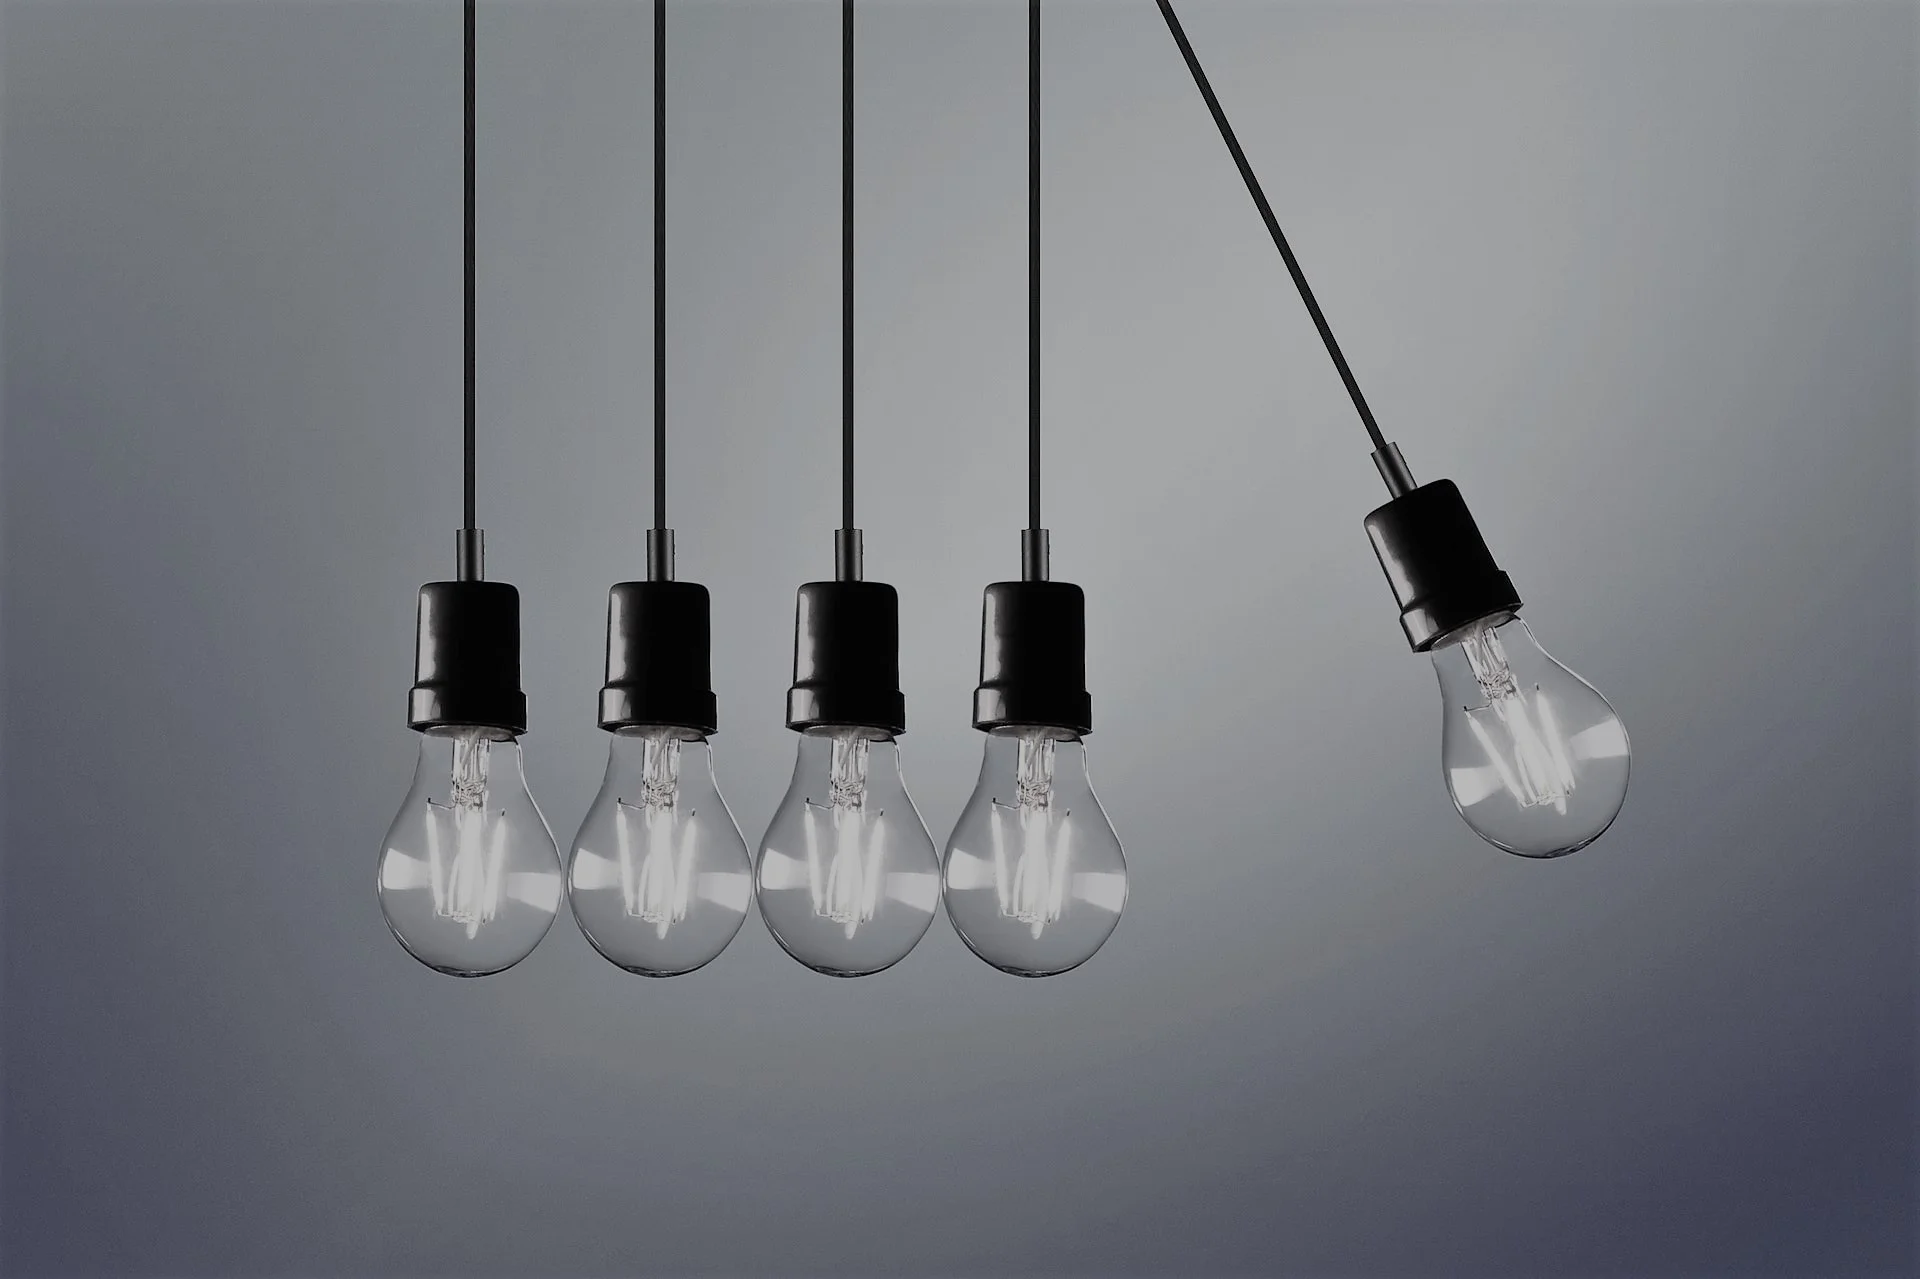 five light bulbs-open data